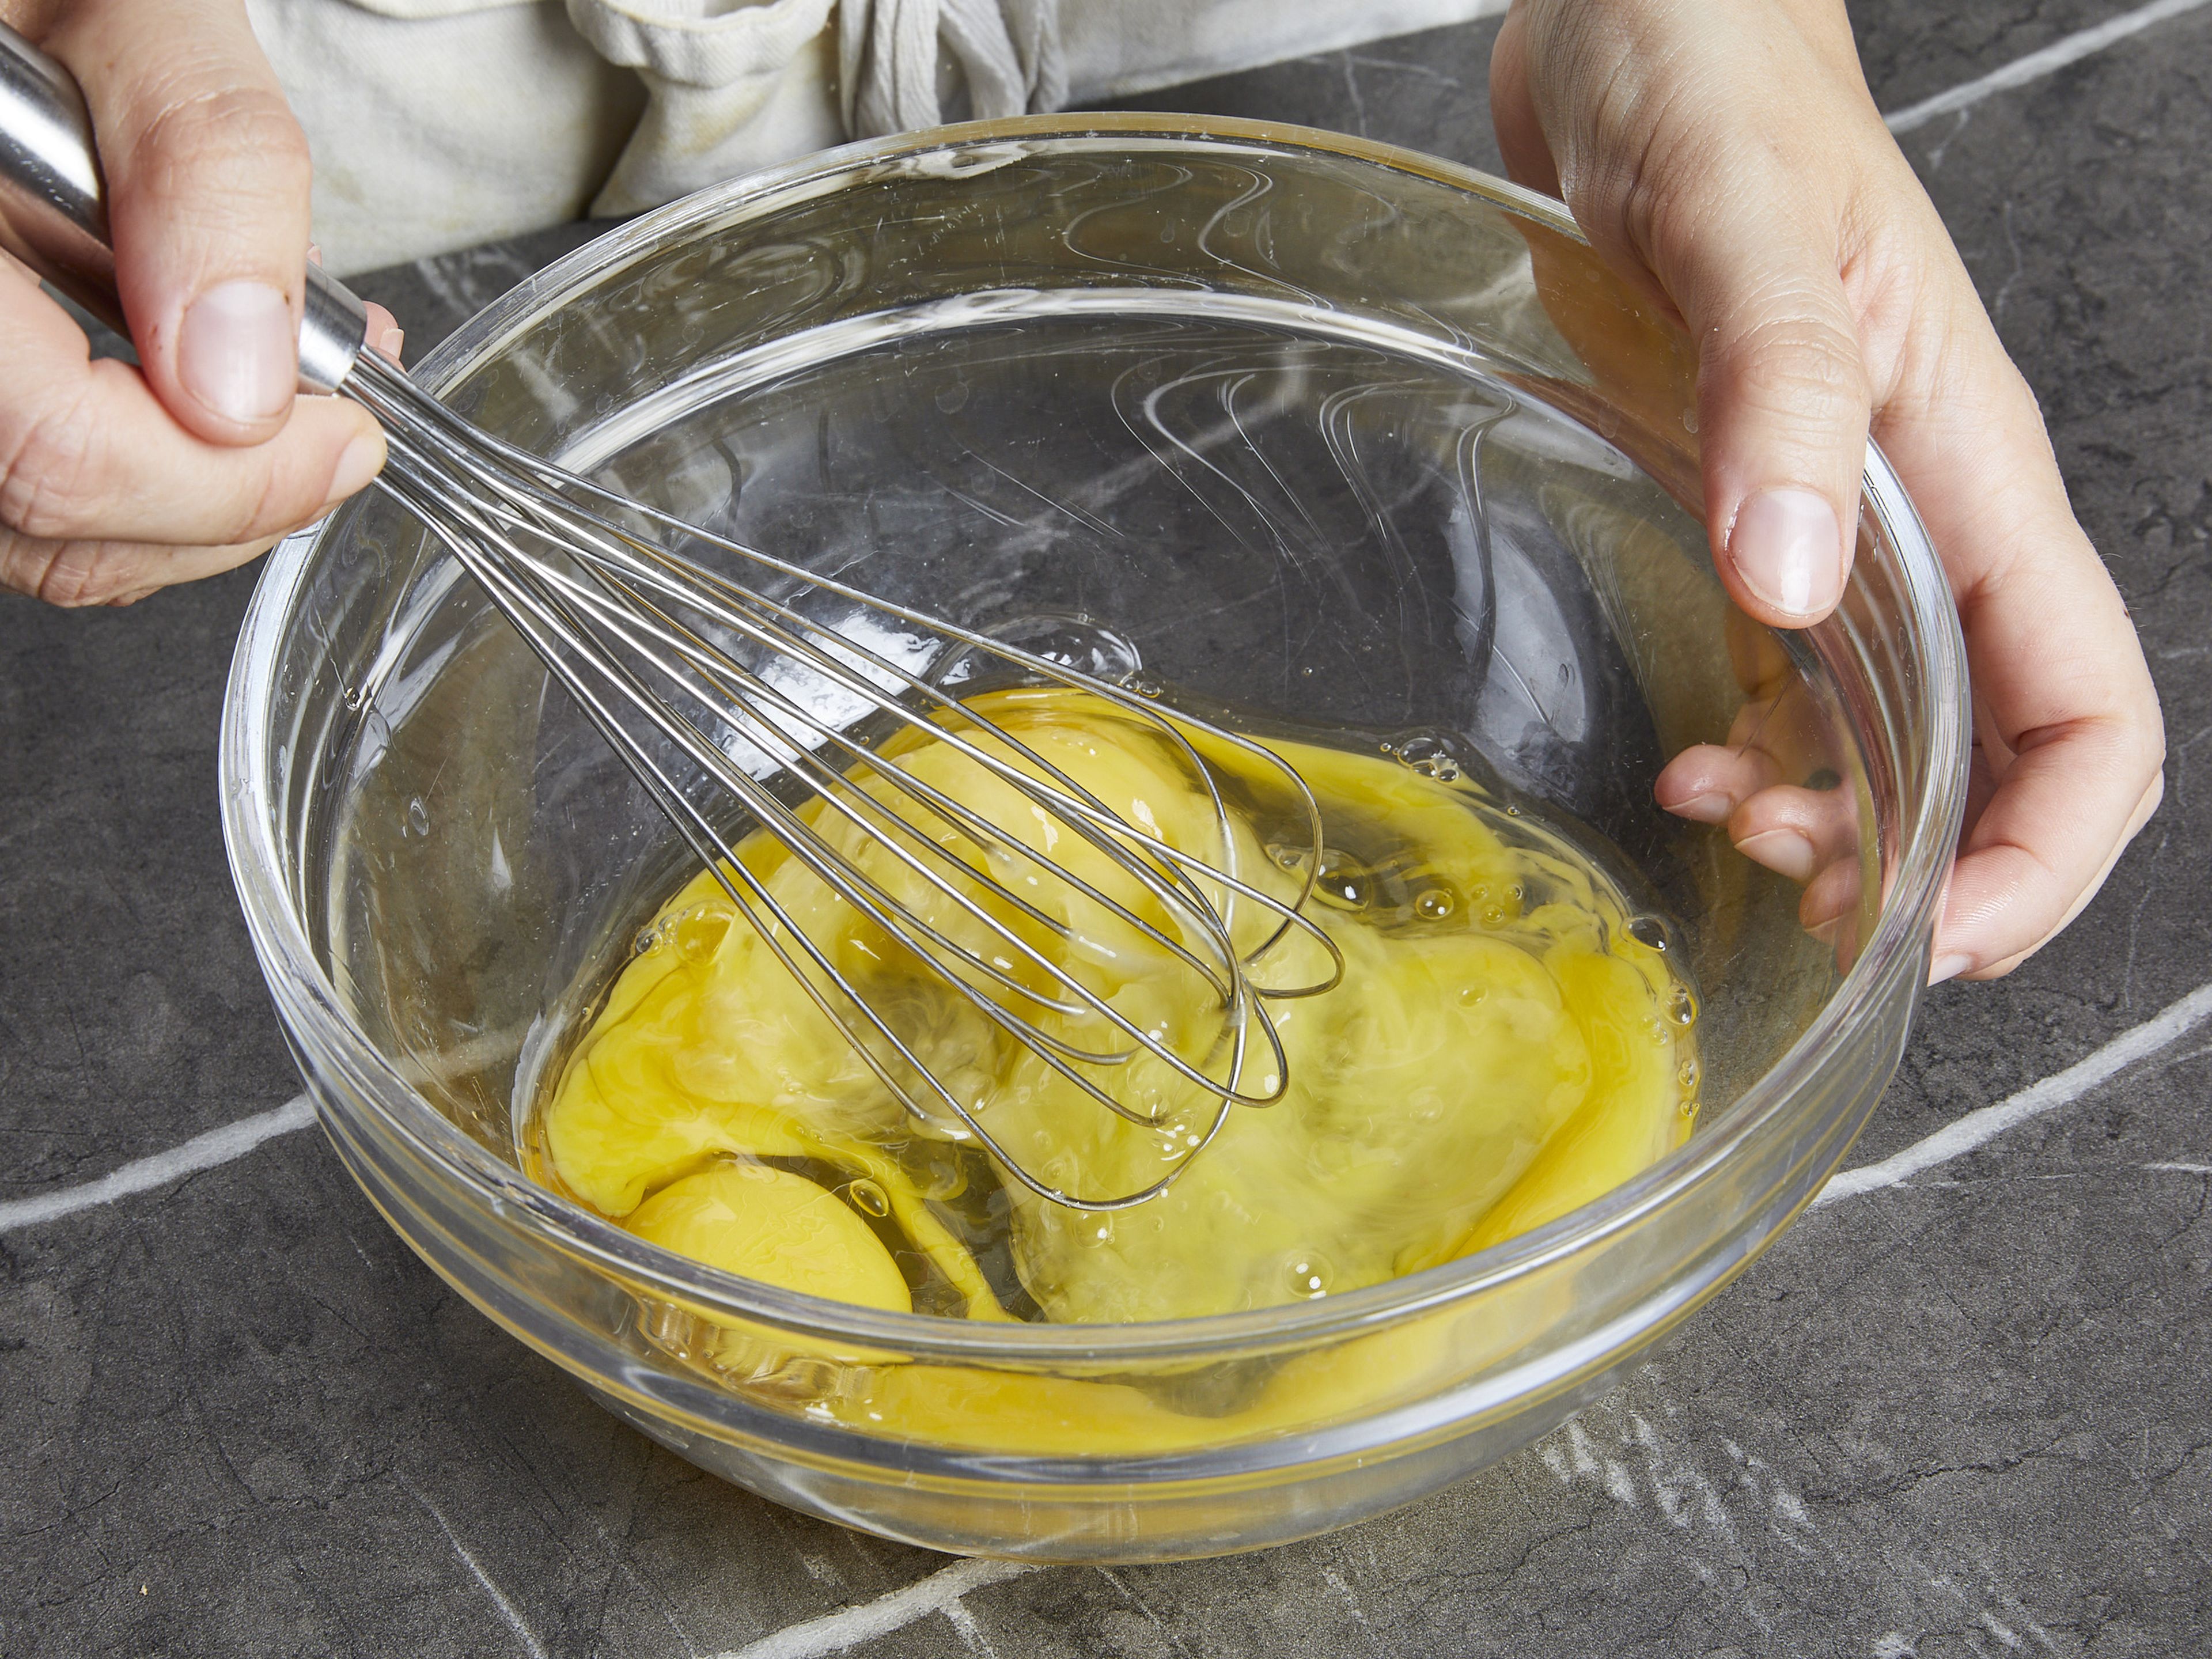 Während die Kartoffeln kochen, die Petersilie grob hacken und einige Blätter zum Servieren aufbewahren. Dann die Zwiebel in dünne Scheiben schneiden. In einer Schüssel Essig, Zucker und Salz vermischen, dann die Zwiebeln dazugeben und kurz einmassieren. Beiseitestellen und bis zum Servieren ziehen lassen. Eier in einer anderen Schüssel mit einer Prise Salz verquirlen und beiseitestellen. Die Haut der Chorizo entfernen und Chorizo dann fein würfeln. Lauch putzen und in dünne Ringe schneiden. Kreuzkümmel grob zerstoßen, wenn er ganz verwendet wird.